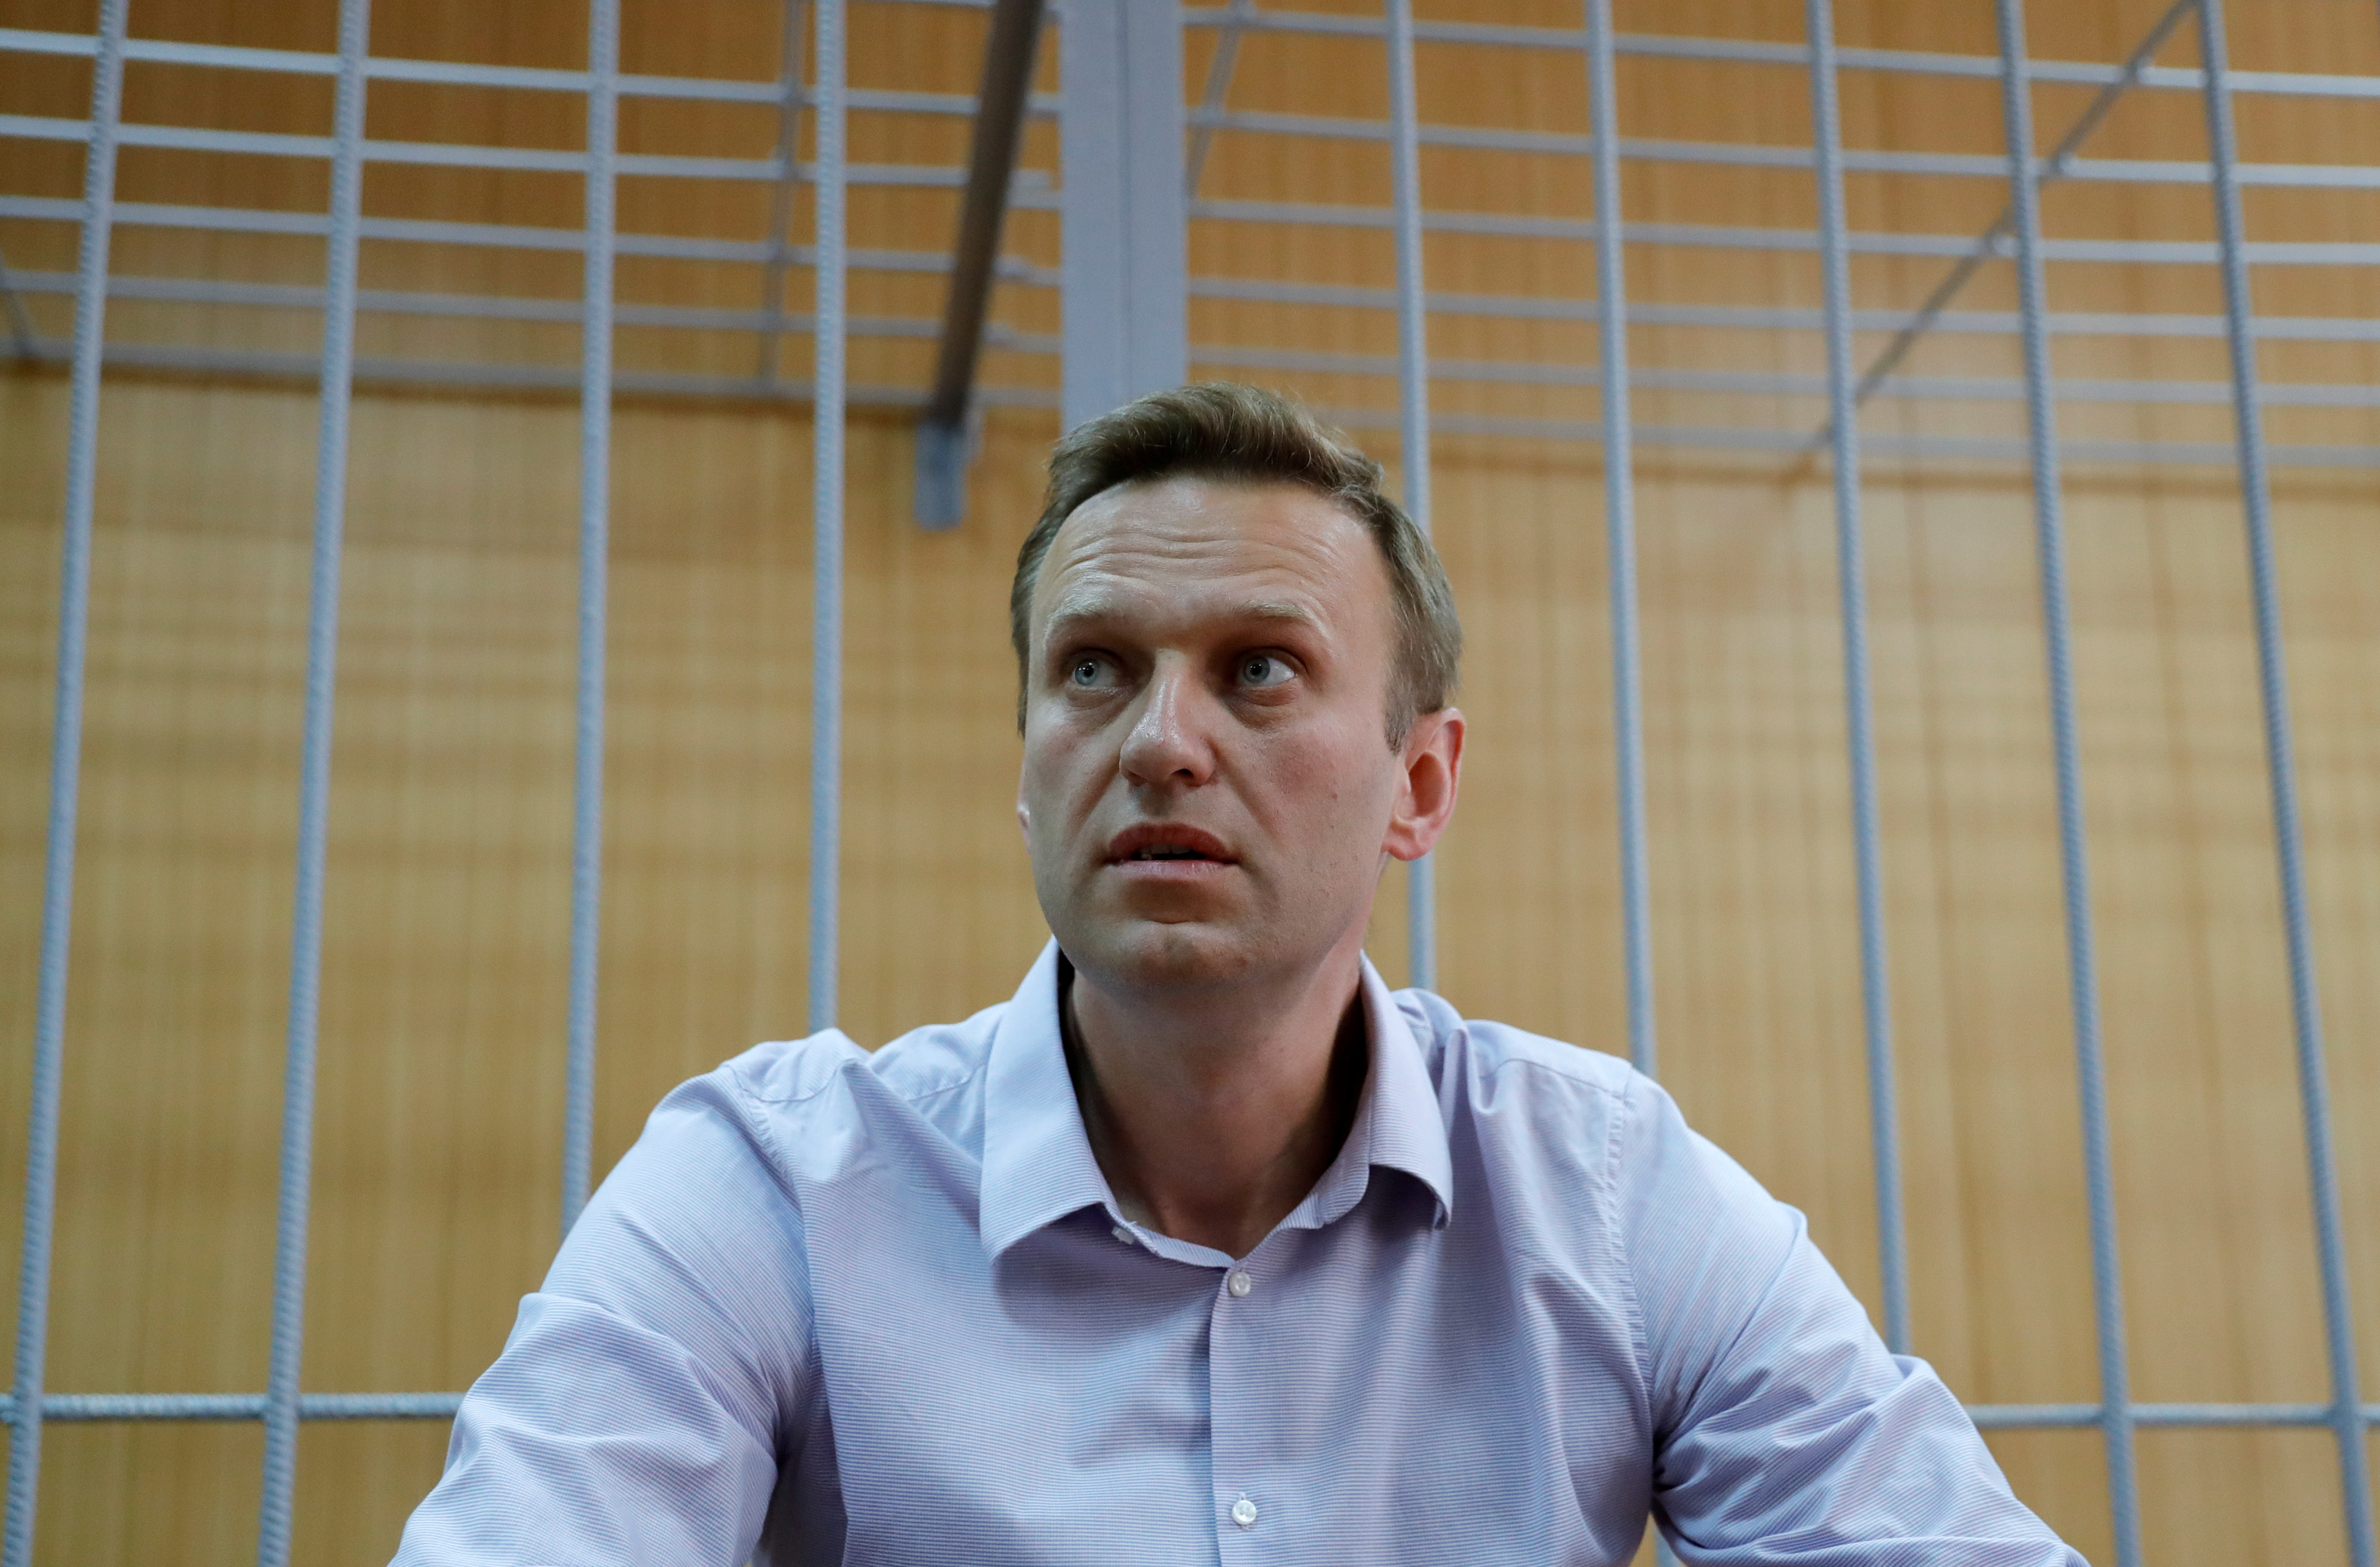 FOTO DE ARCHIVO: El líder opositor ruso Alexei Navalny asiste a una vista judicial en Moscú, Rusia 15 de mayo de 2018. REUTERS/Tatyana Makeyeva